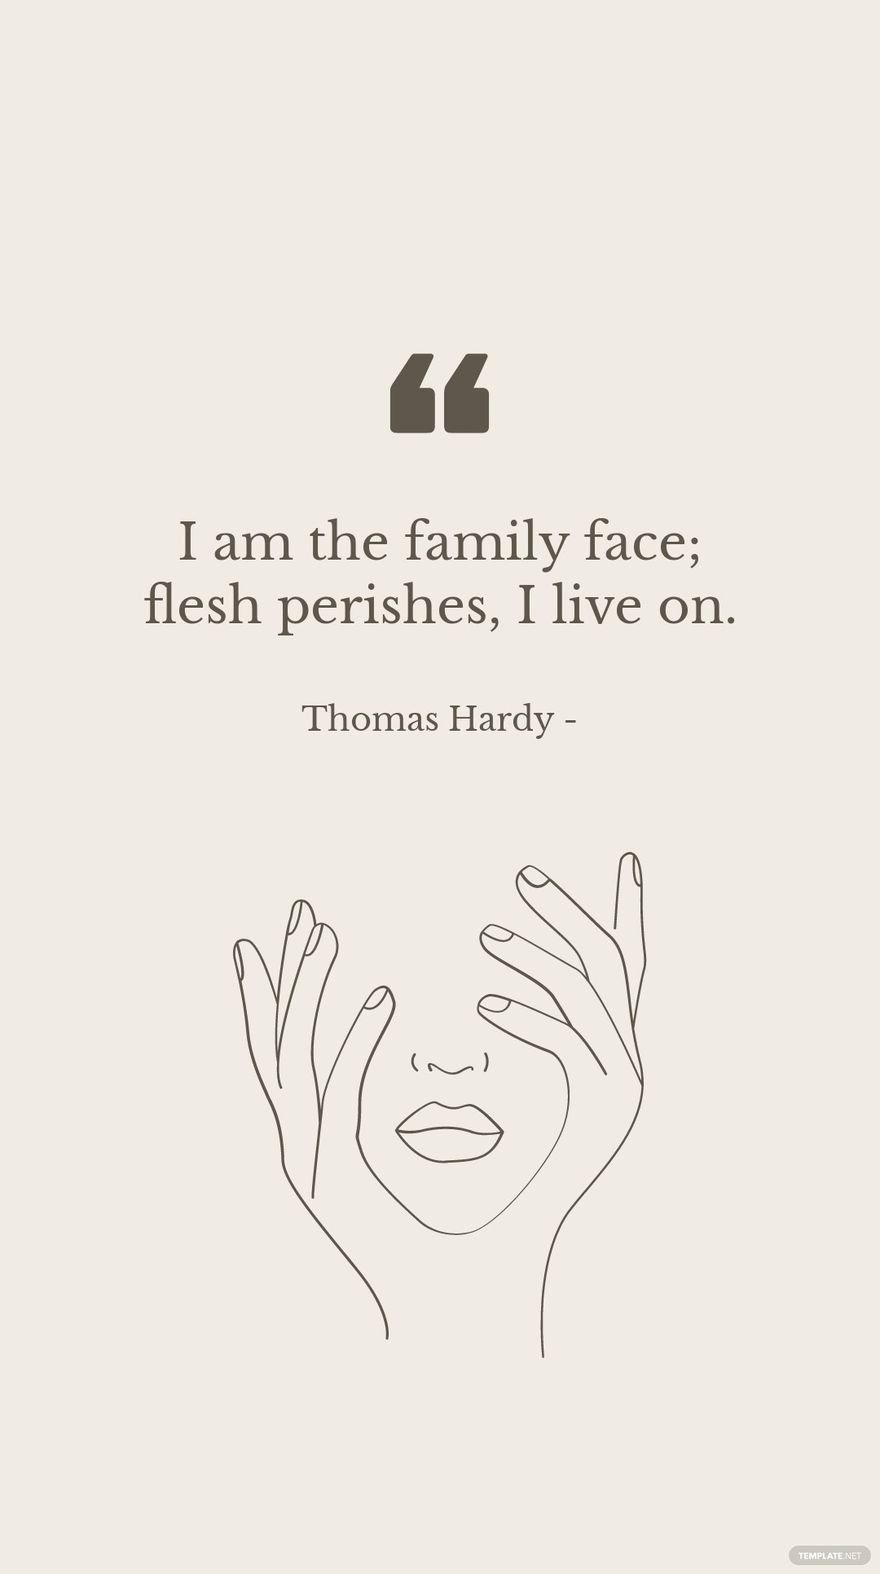 Thomas Hardy - I am the family face; flesh perishes, I live on.